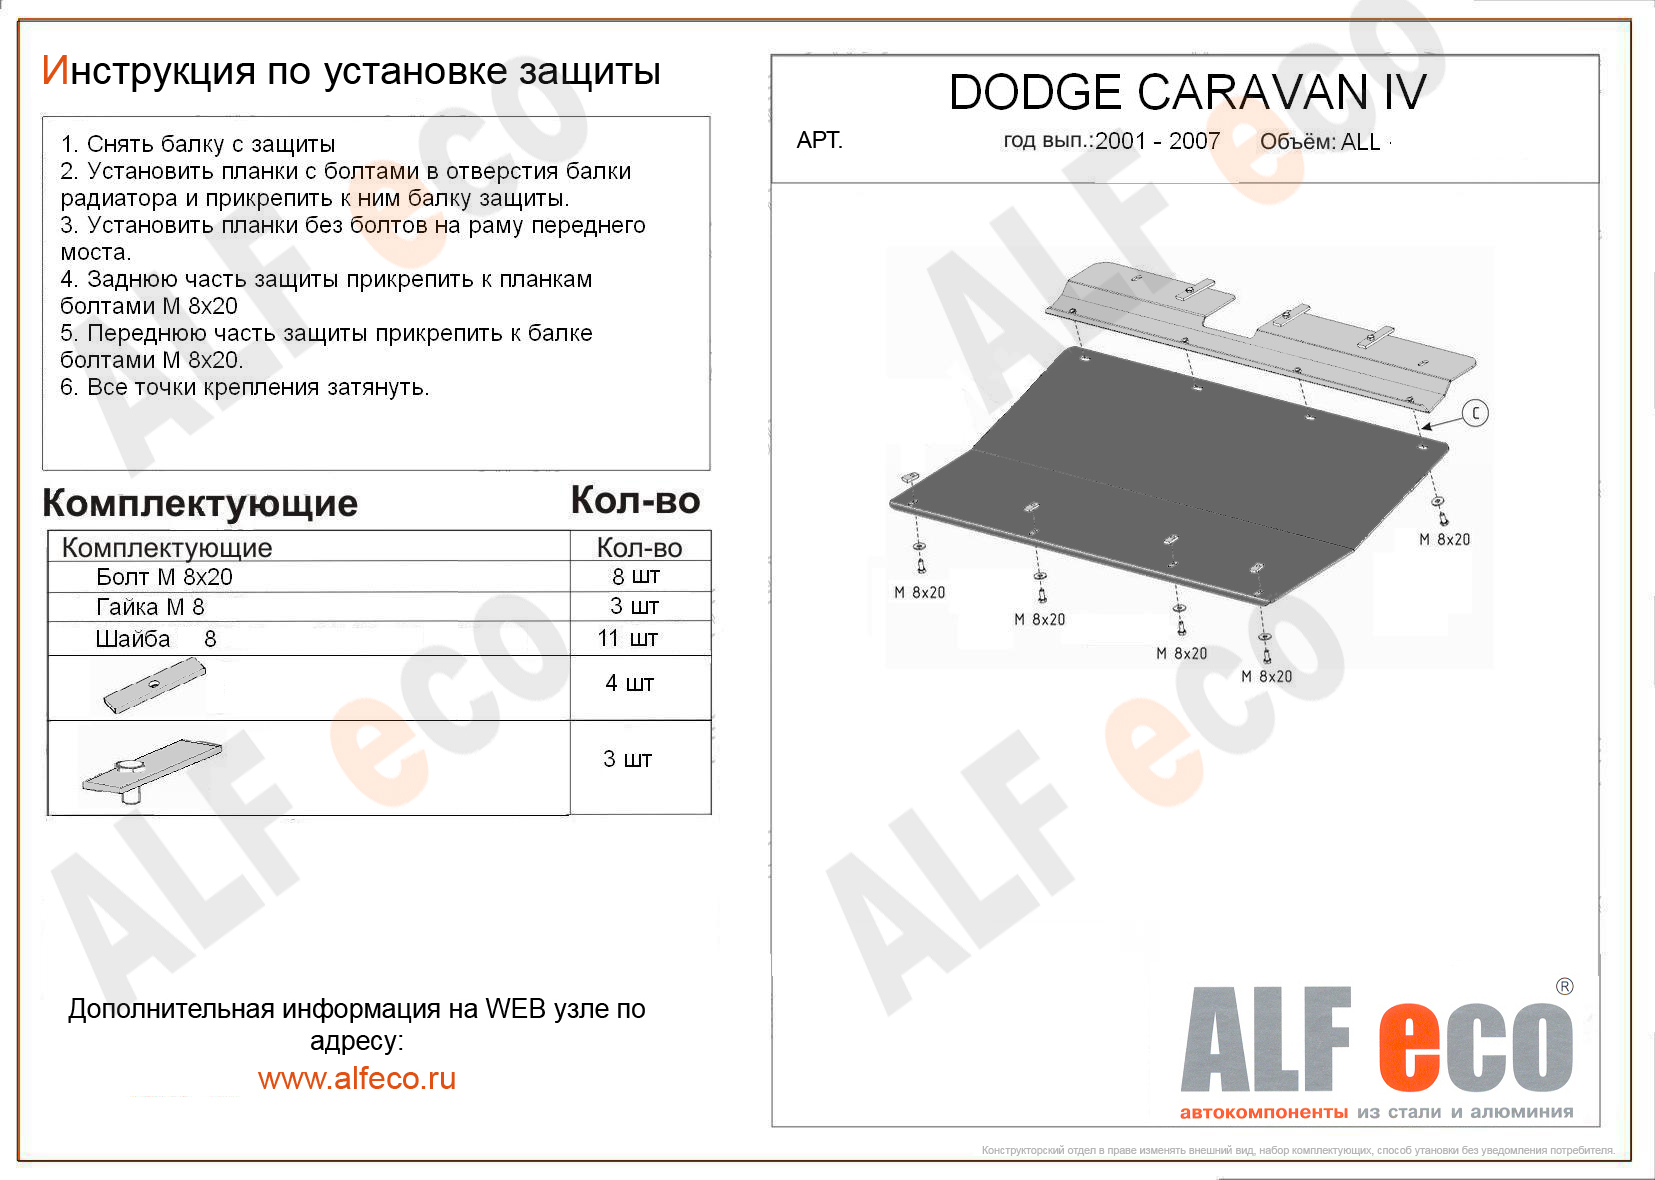 ,    Dodge Caravan III 2001 - 2007
                